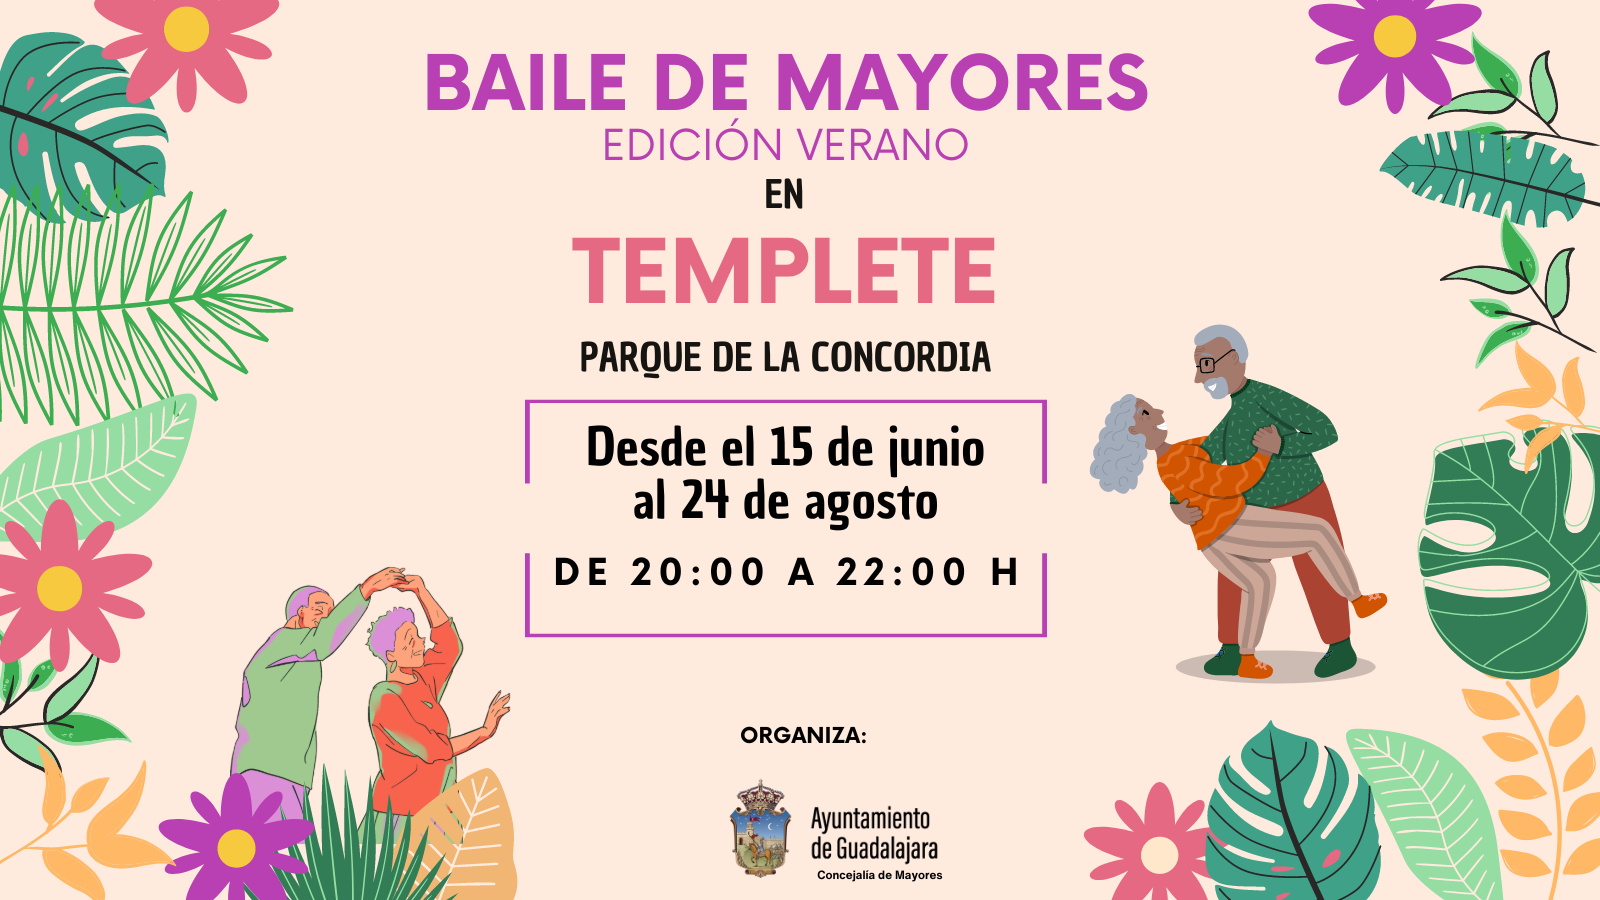 El baile de mayores de verano será en el templete del parque de la Concordia de Guadalajara